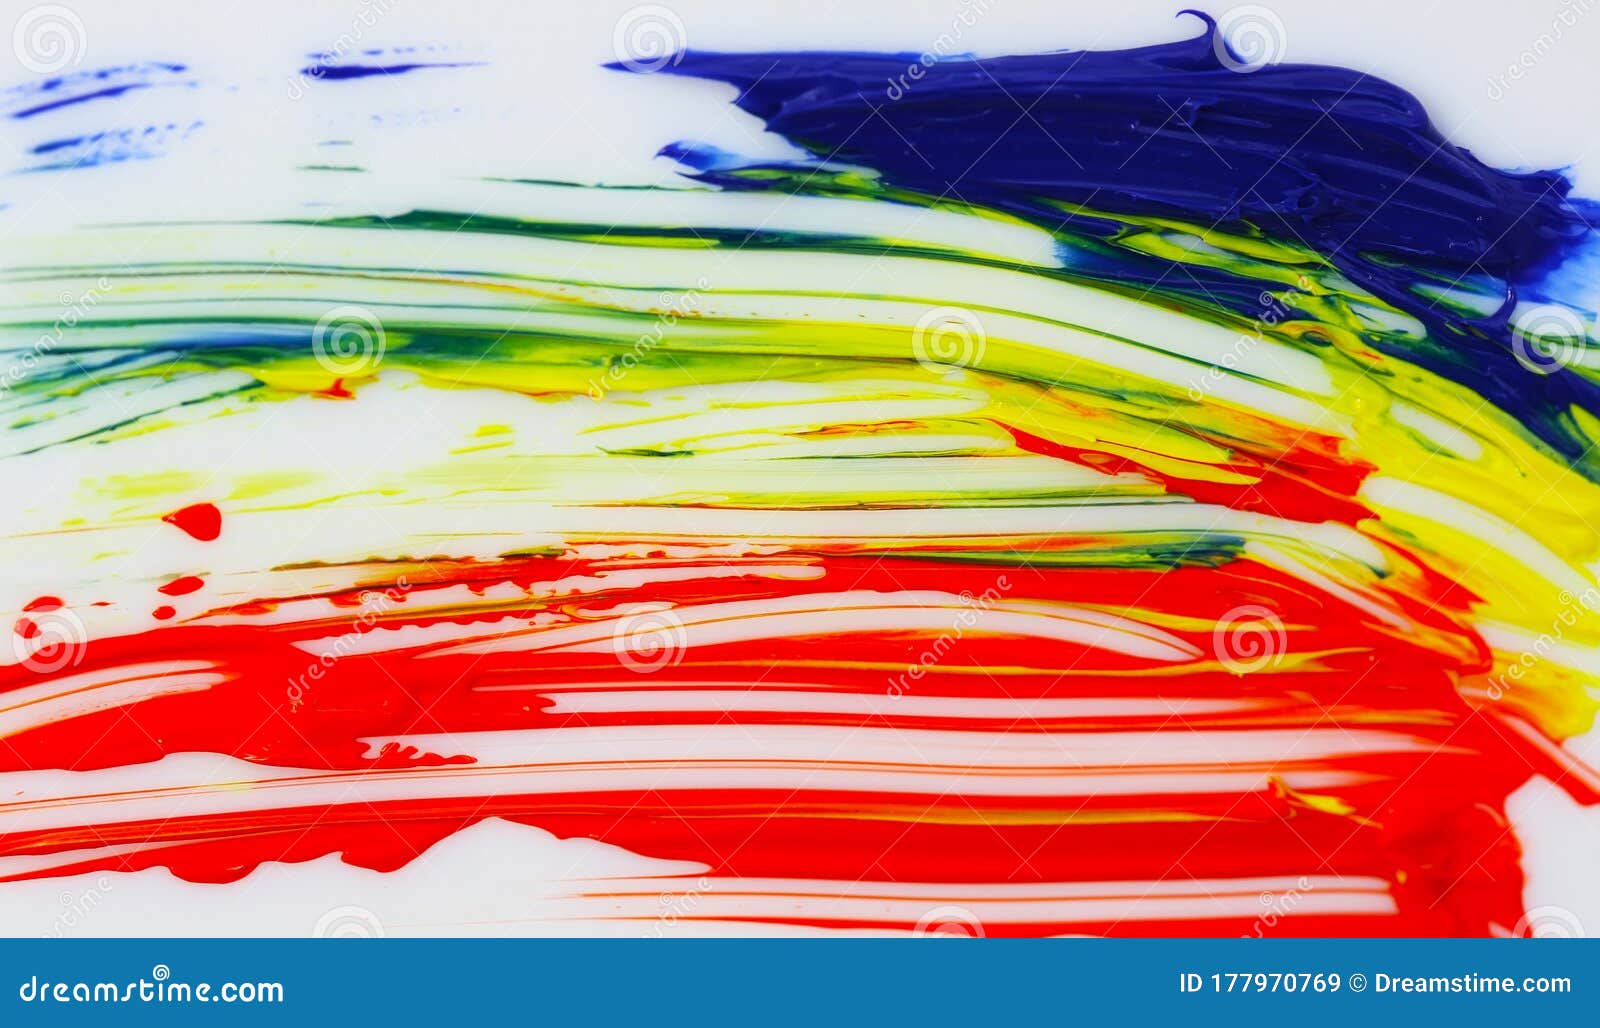 Fondo De Pantalla Abstracto De Pintura Al óleo Con Trazos De Pincel En Colores  Cálidos Imagen de archivo - Imagen de copia, caliente: 177970769